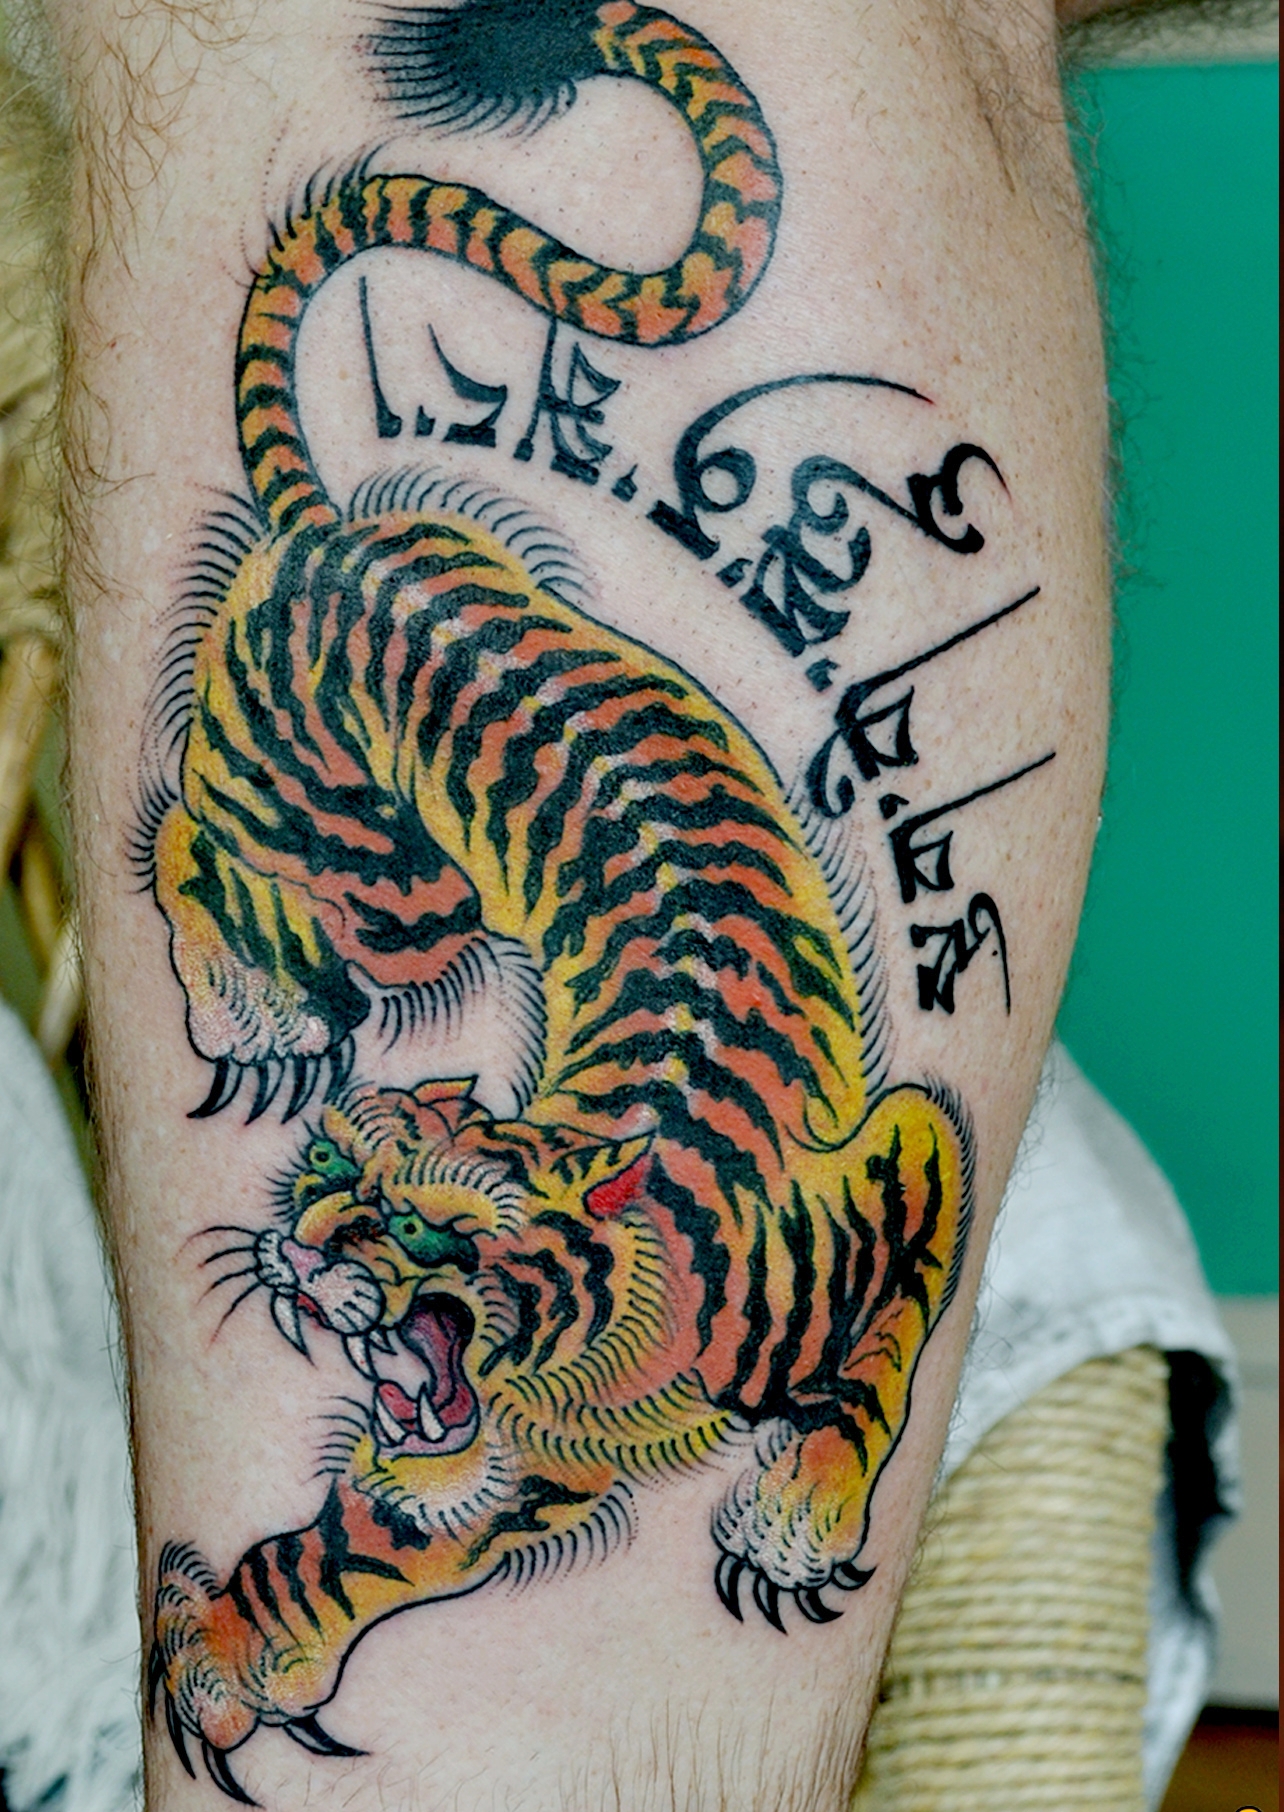 Tibetan Tattoos and art